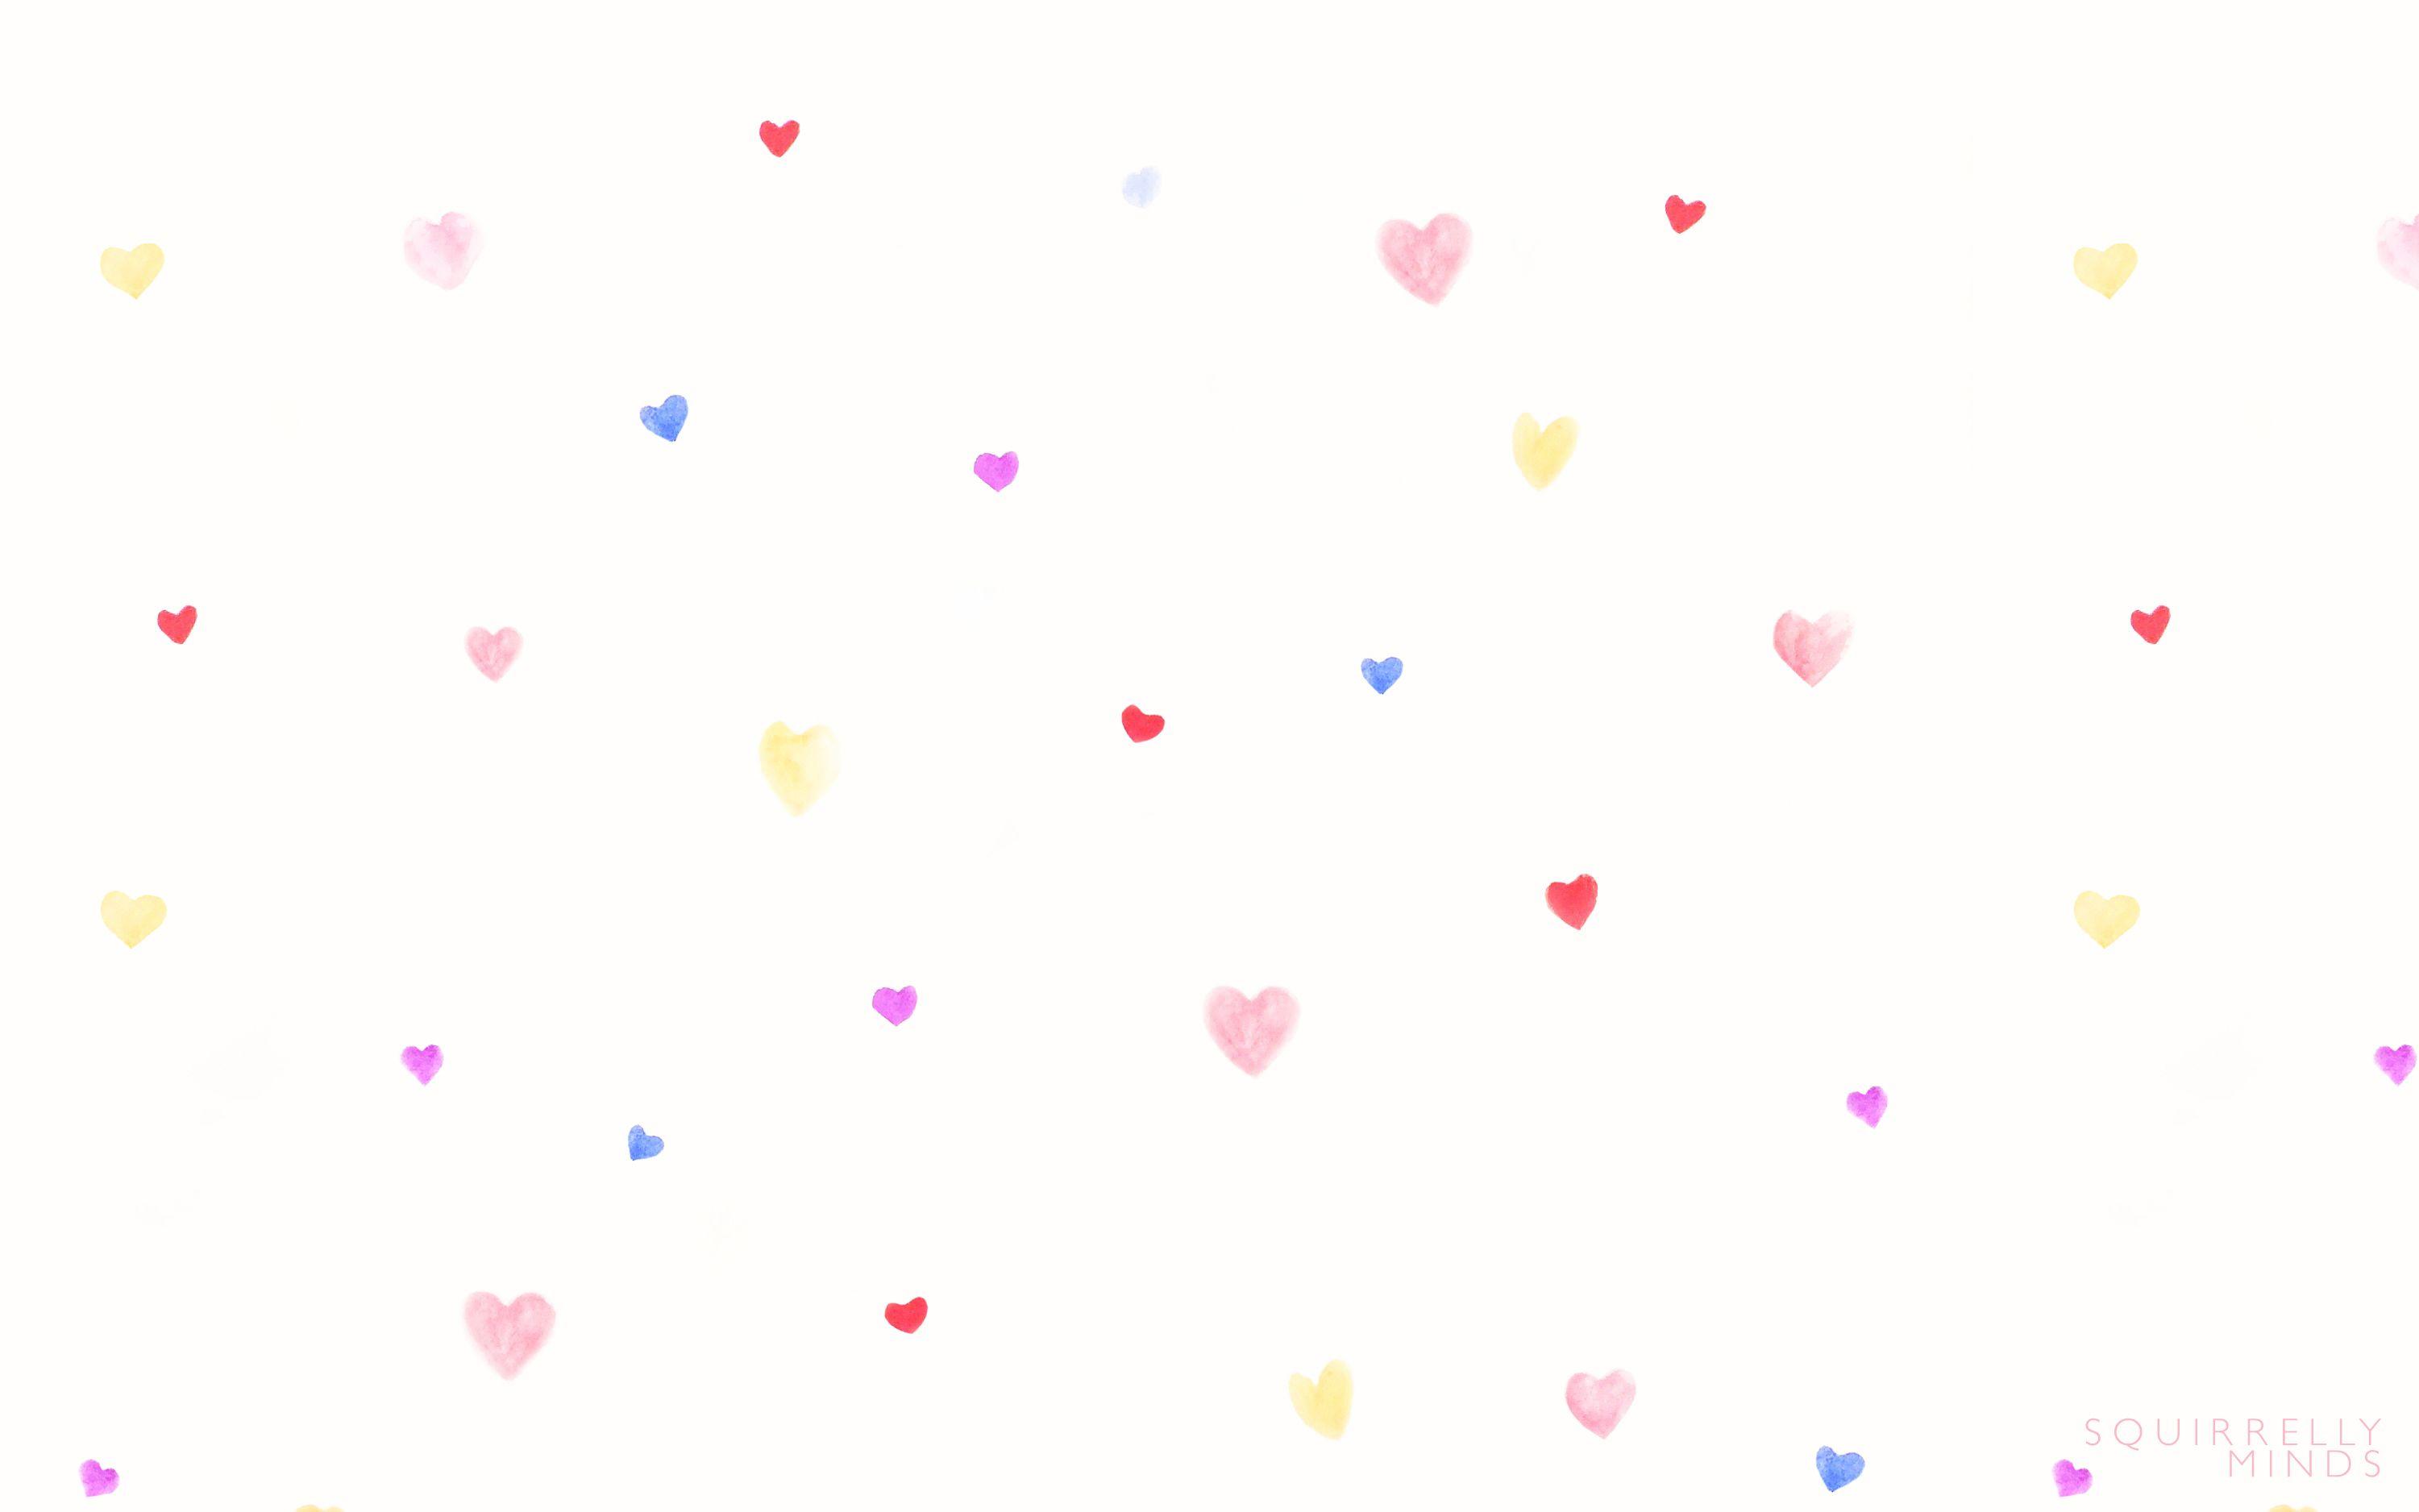 Hình nền máy tính trái tim sơn màu khiến cho tất cả các kỹ thuật viên đều xao xuyến. Với màu sắc tươi sáng, mịn màng và tự nhiên, các trái tim sẽ mang đến sự khởi đầu tuyệt vời cho ngày mới và giúp bạn giải tỏa căng thẳng và mệt mỏi của ngày làm việc dài.